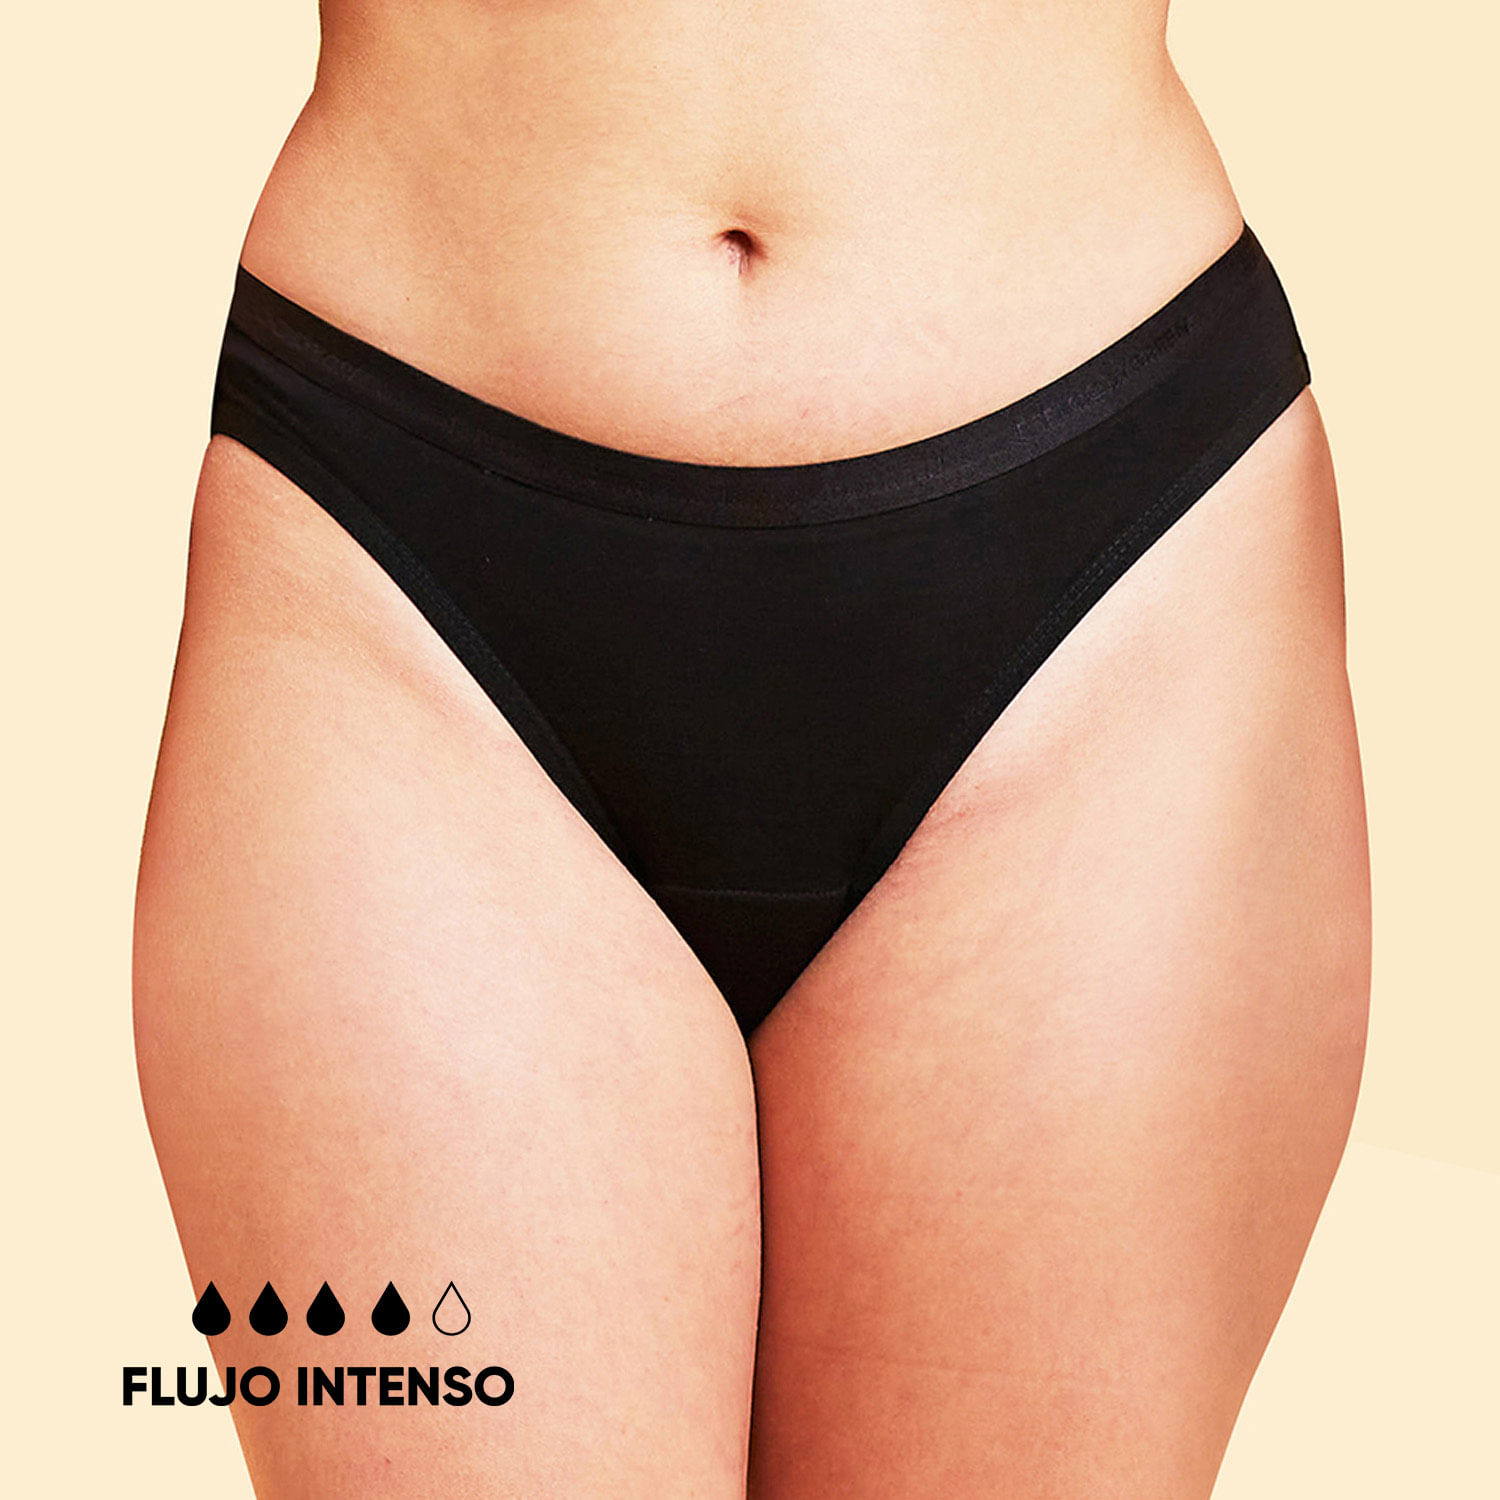 https://jumbo.vtexassets.com/arquivos/ids/724674/Calzon-menstrual-Bikini-Flujo-Intenso-negro-talla-L.jpg?v=638325386993430000